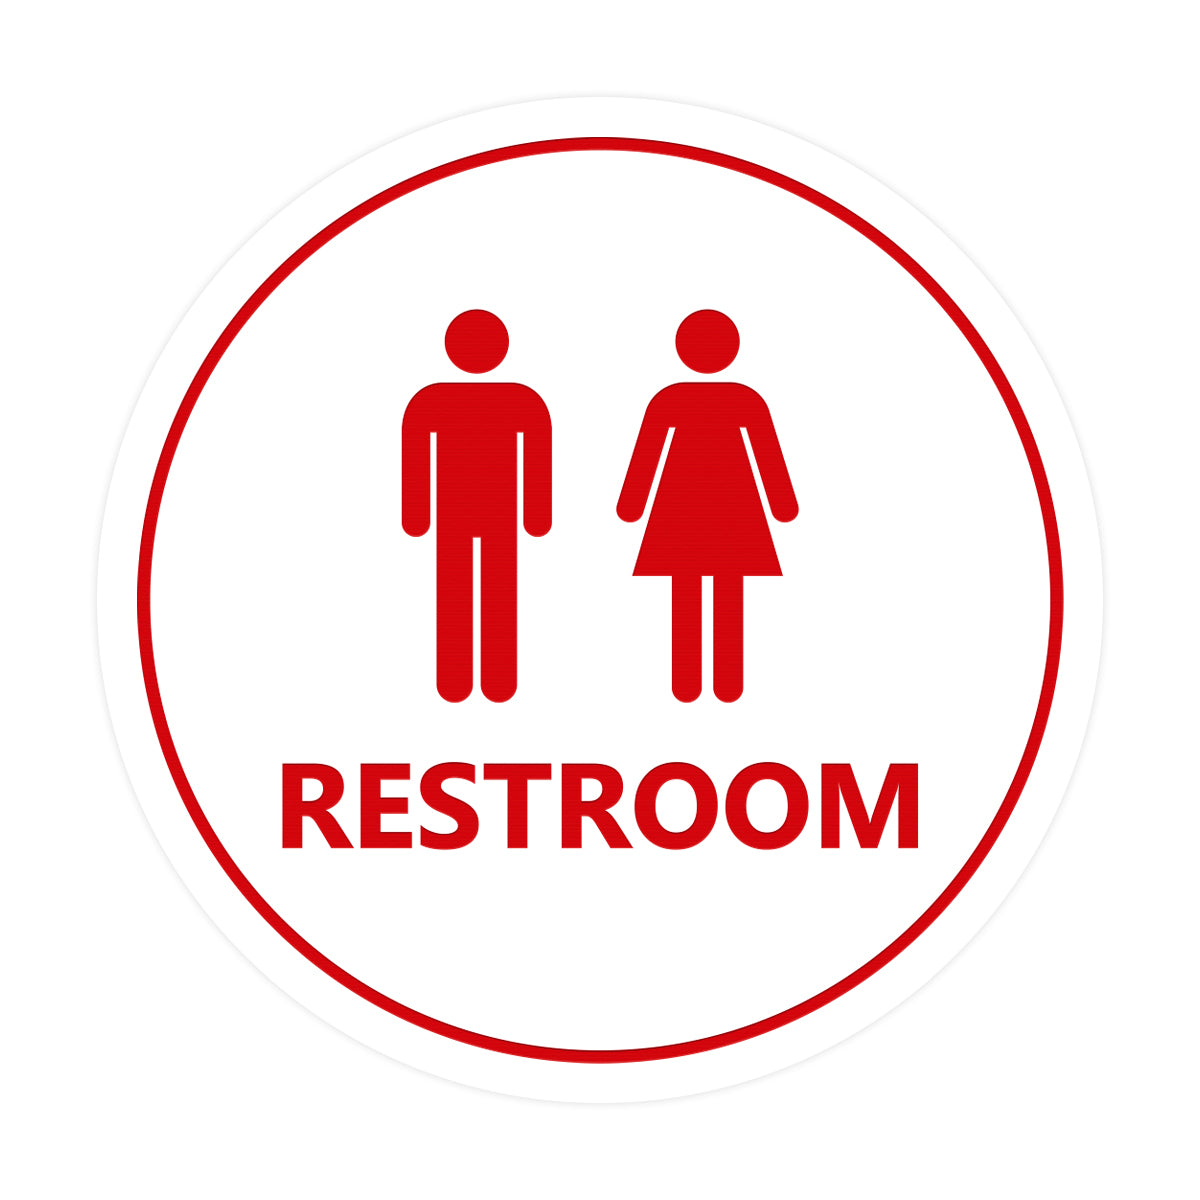 Signs ByLITA Circle Unisex Restroom Sign